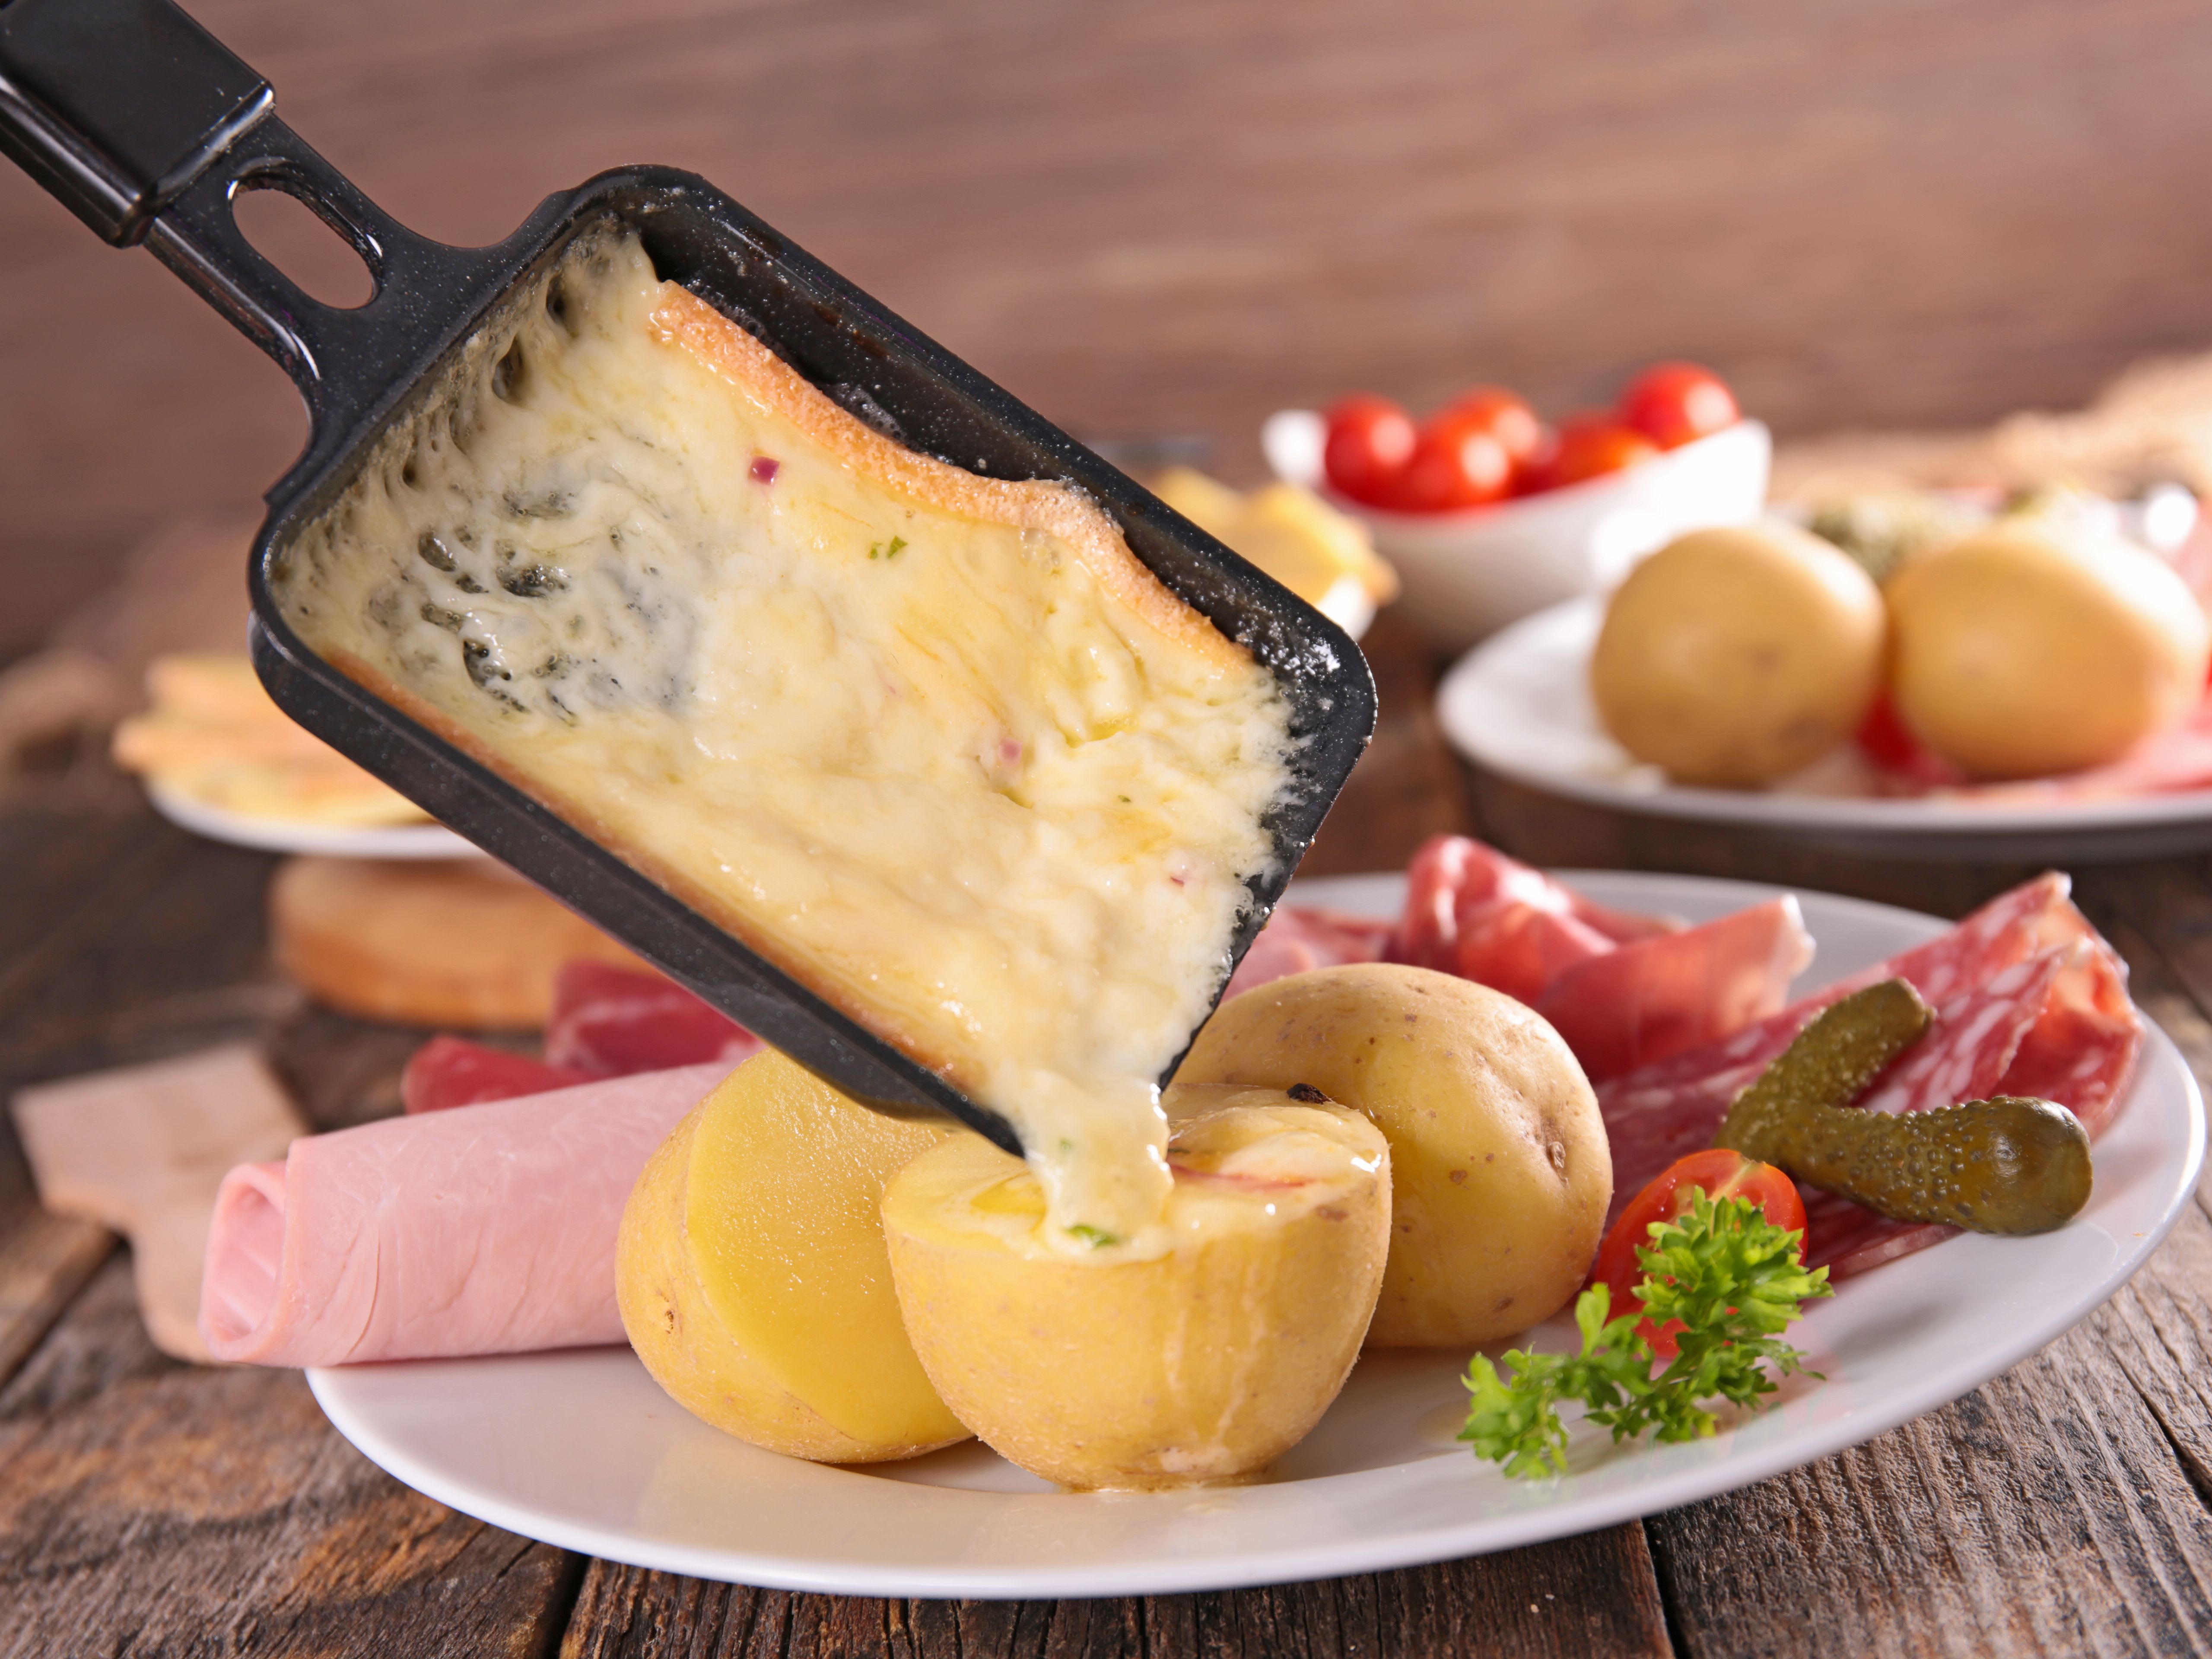 Formule raclette : appareil, pommes de terre, charcuterie et fromage